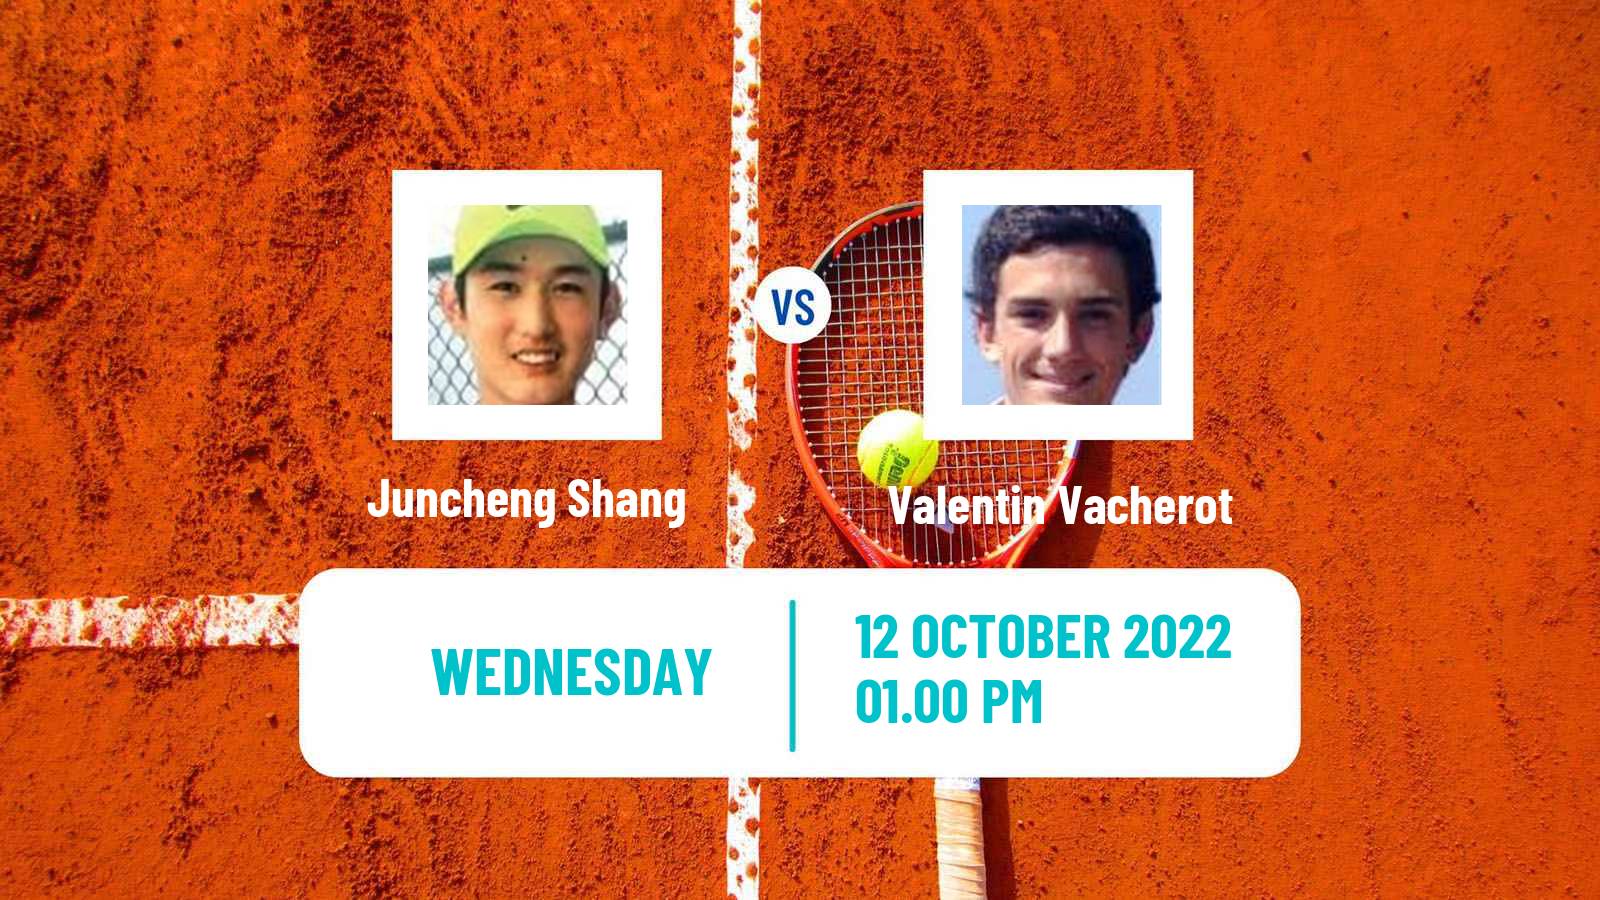 Tennis ATP Challenger Juncheng Shang - Valentin Vacherot